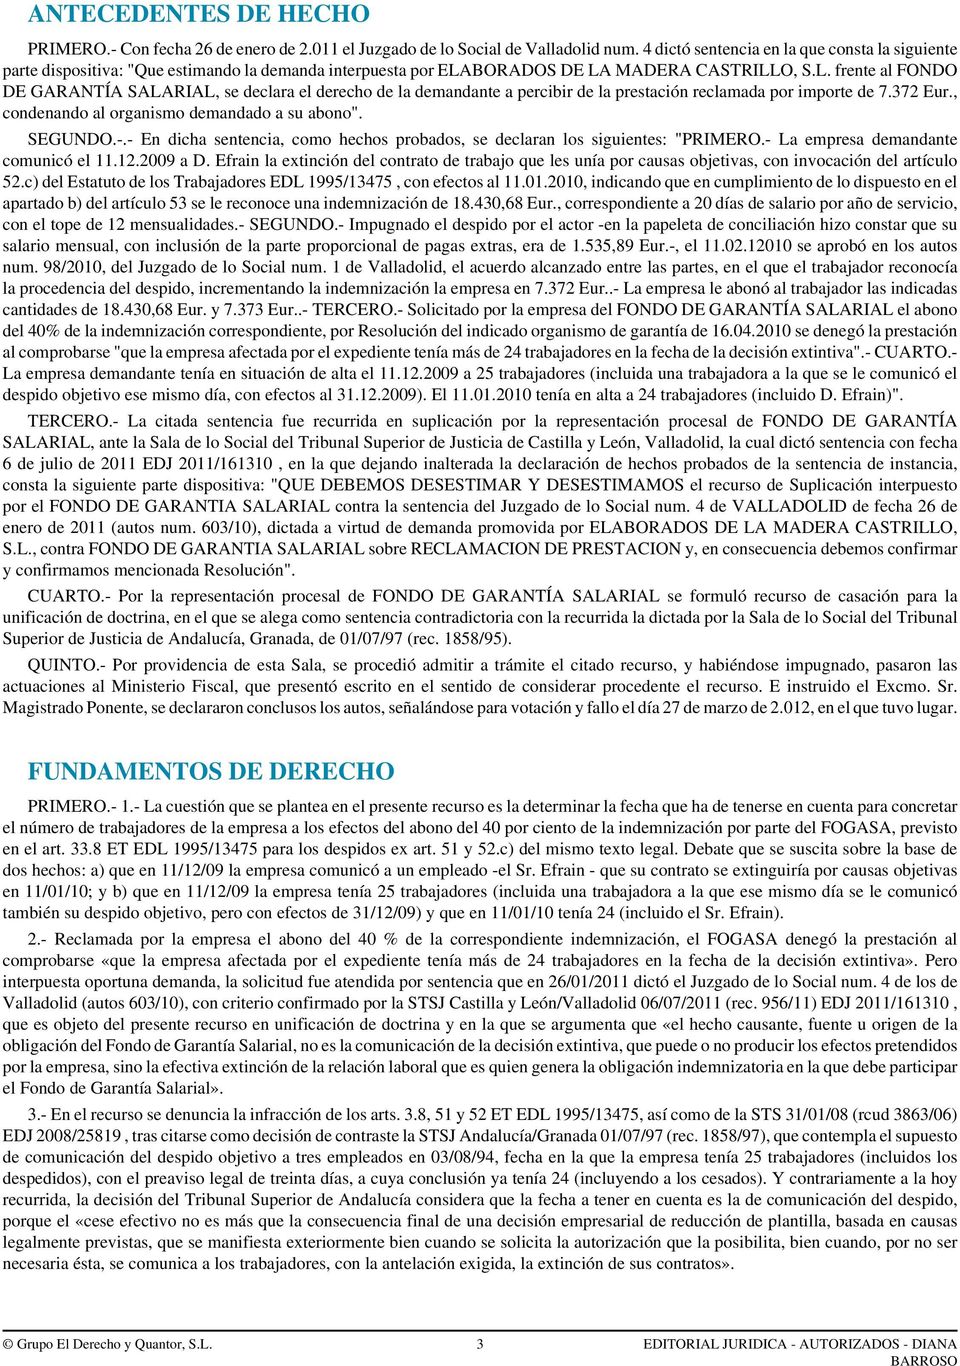 BORADOS DE LA MADERA CASTRILLO, S.L. frente al FONDO DE GARANTÍA SALARIAL, se declara el derecho de la demandante a percibir de la prestación reclamada por importe de 7.372 Eur.